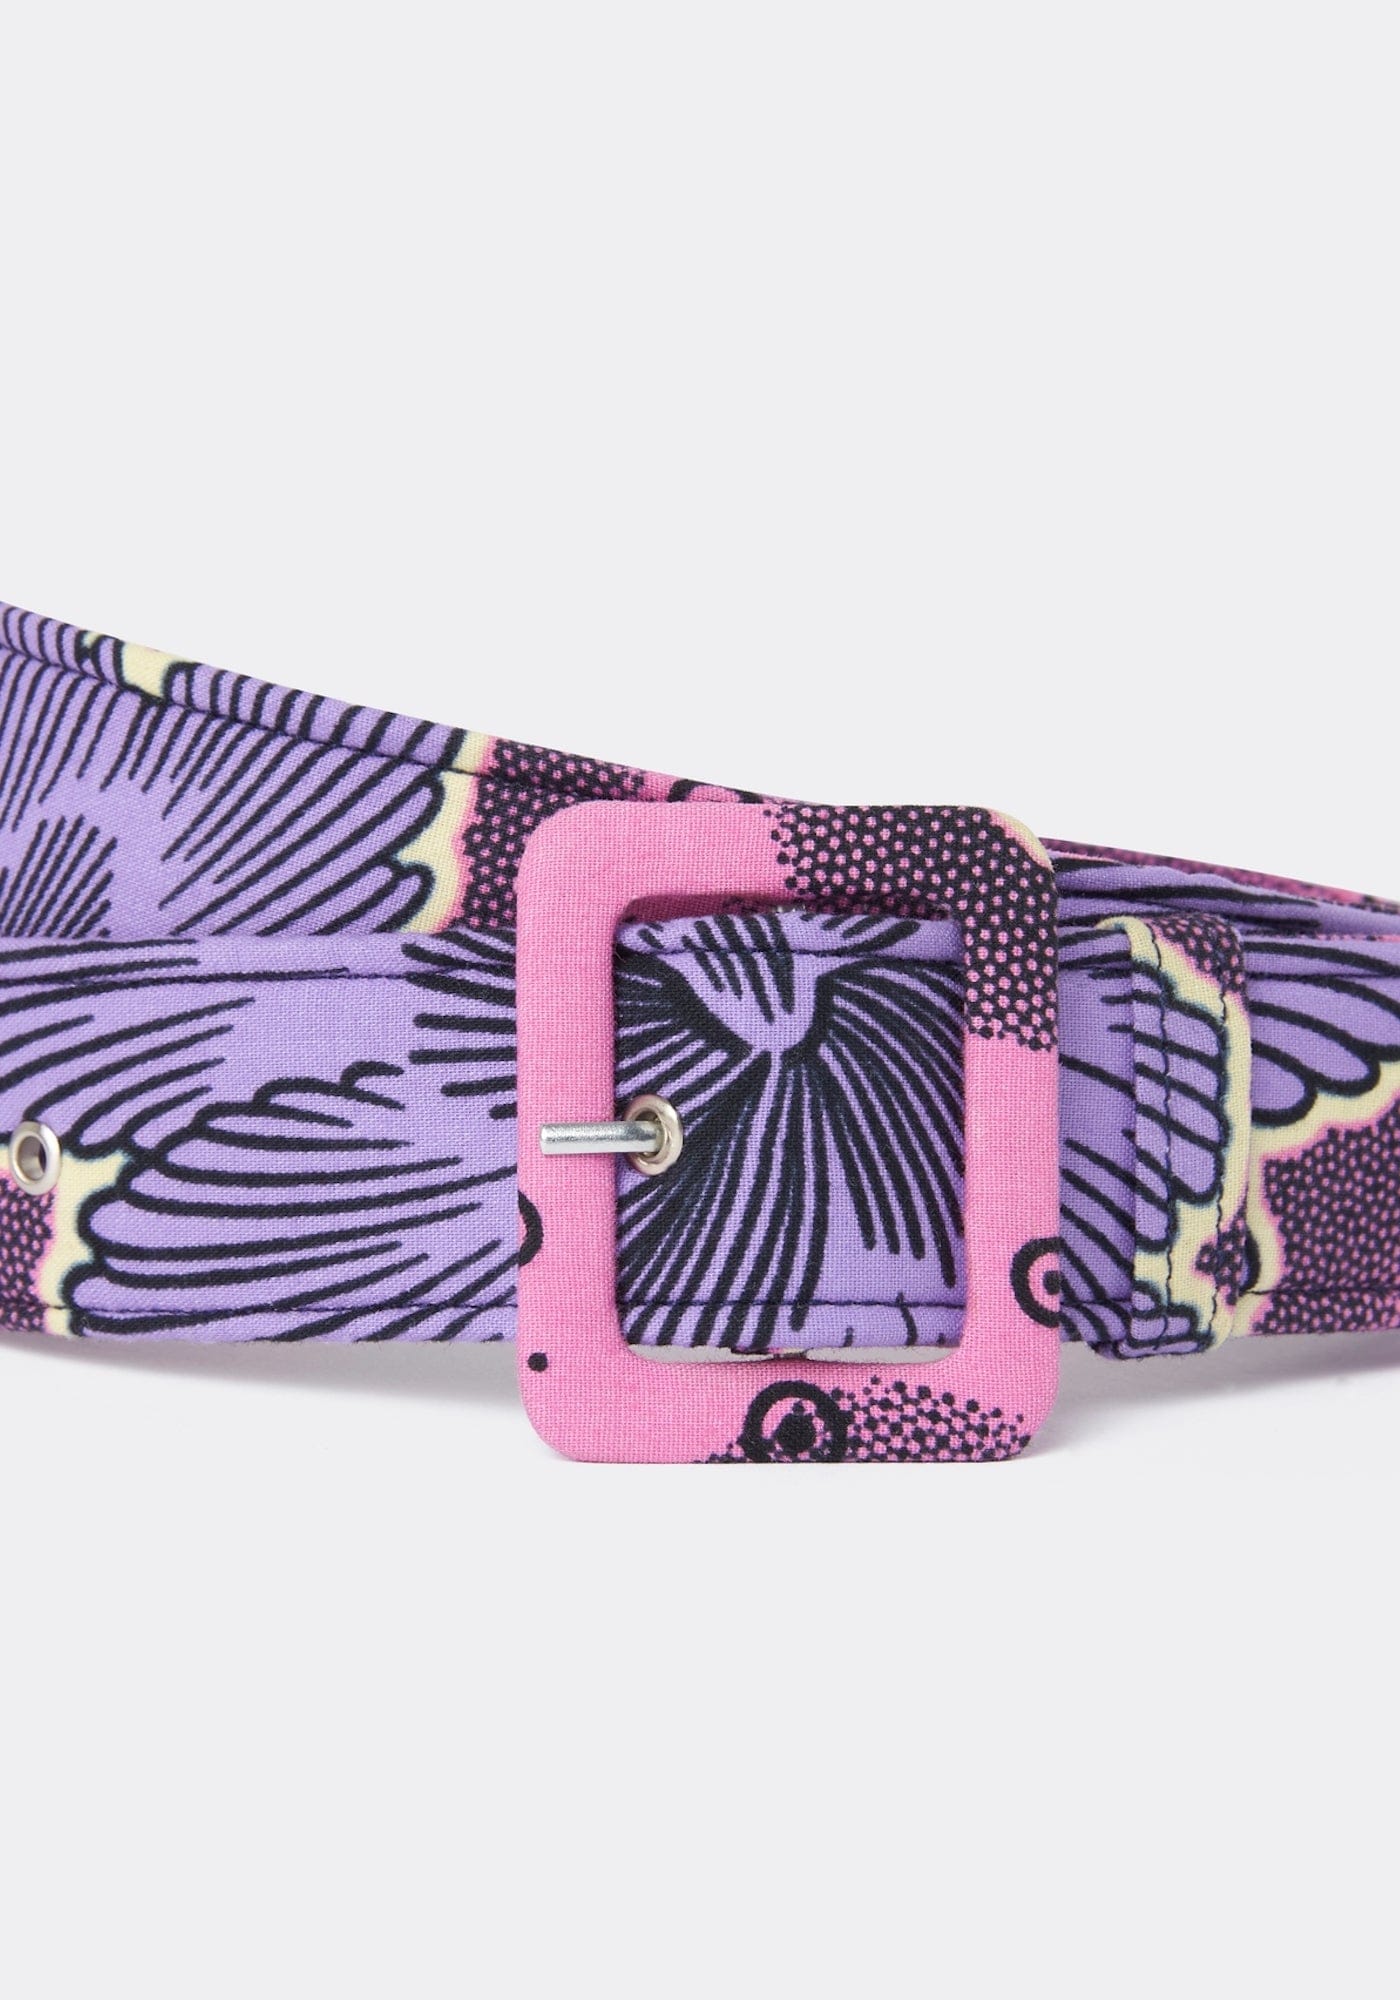 YEVU Accessories - Belts Standard Belt - Purple Flowers